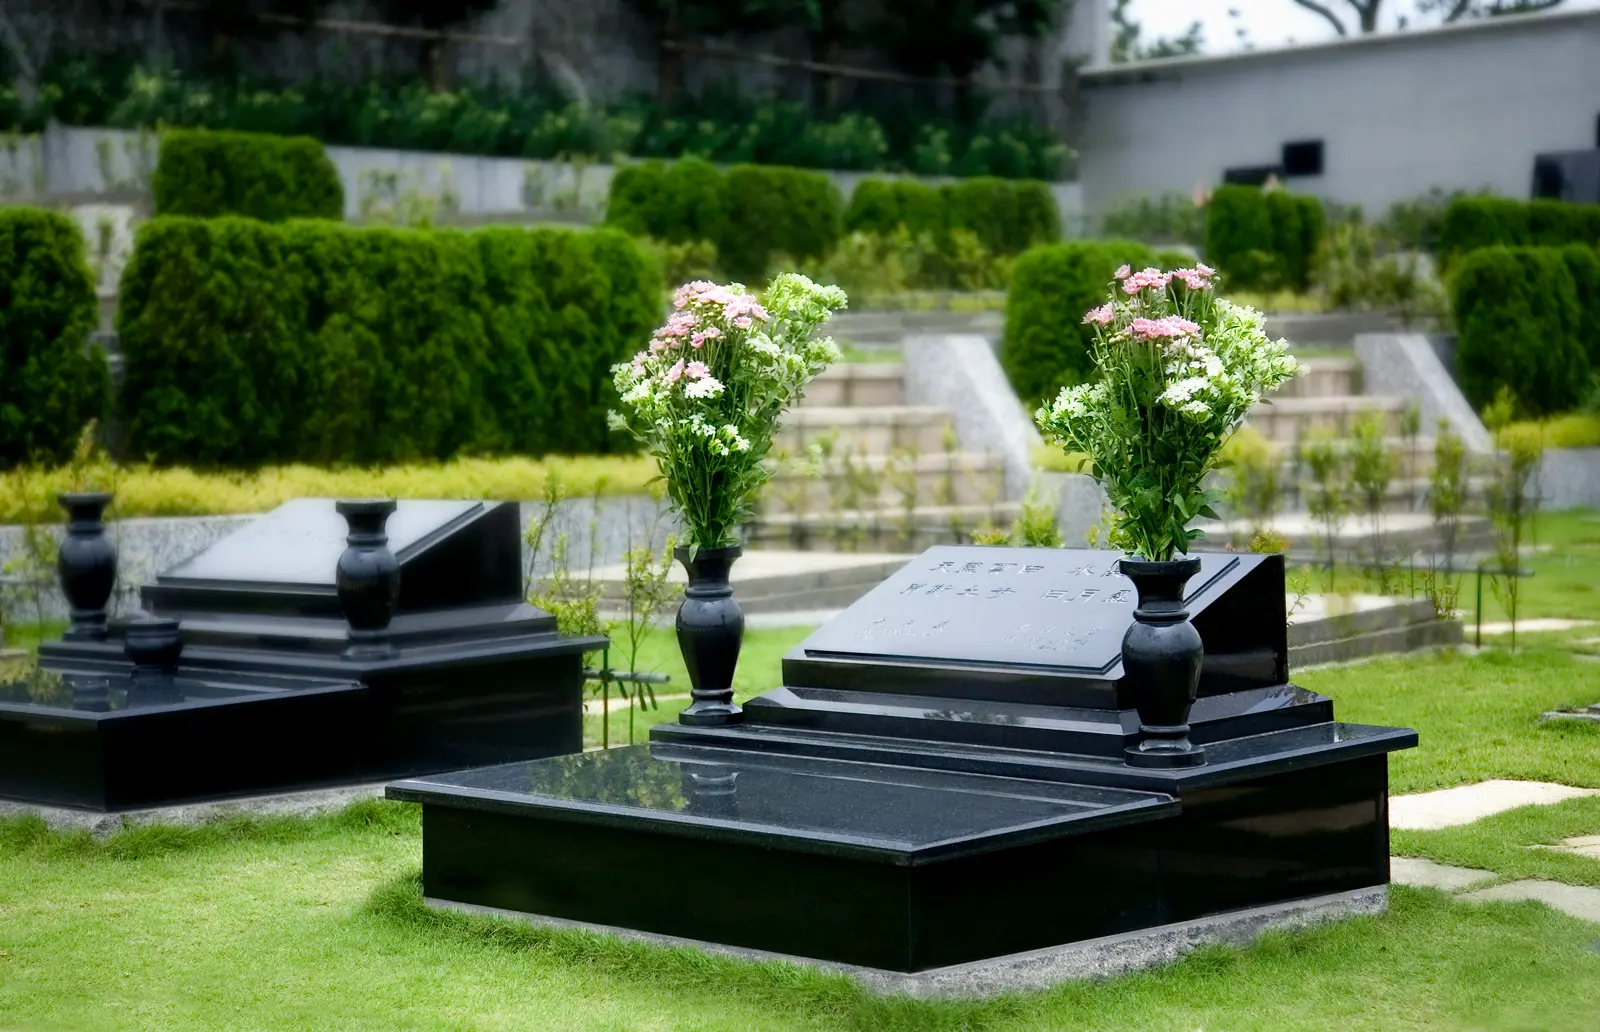 台灣的喪葬文化目前的的選擇有：土葬、塔葬、樹葬、海葬、花葬等多元環保葬…等選擇